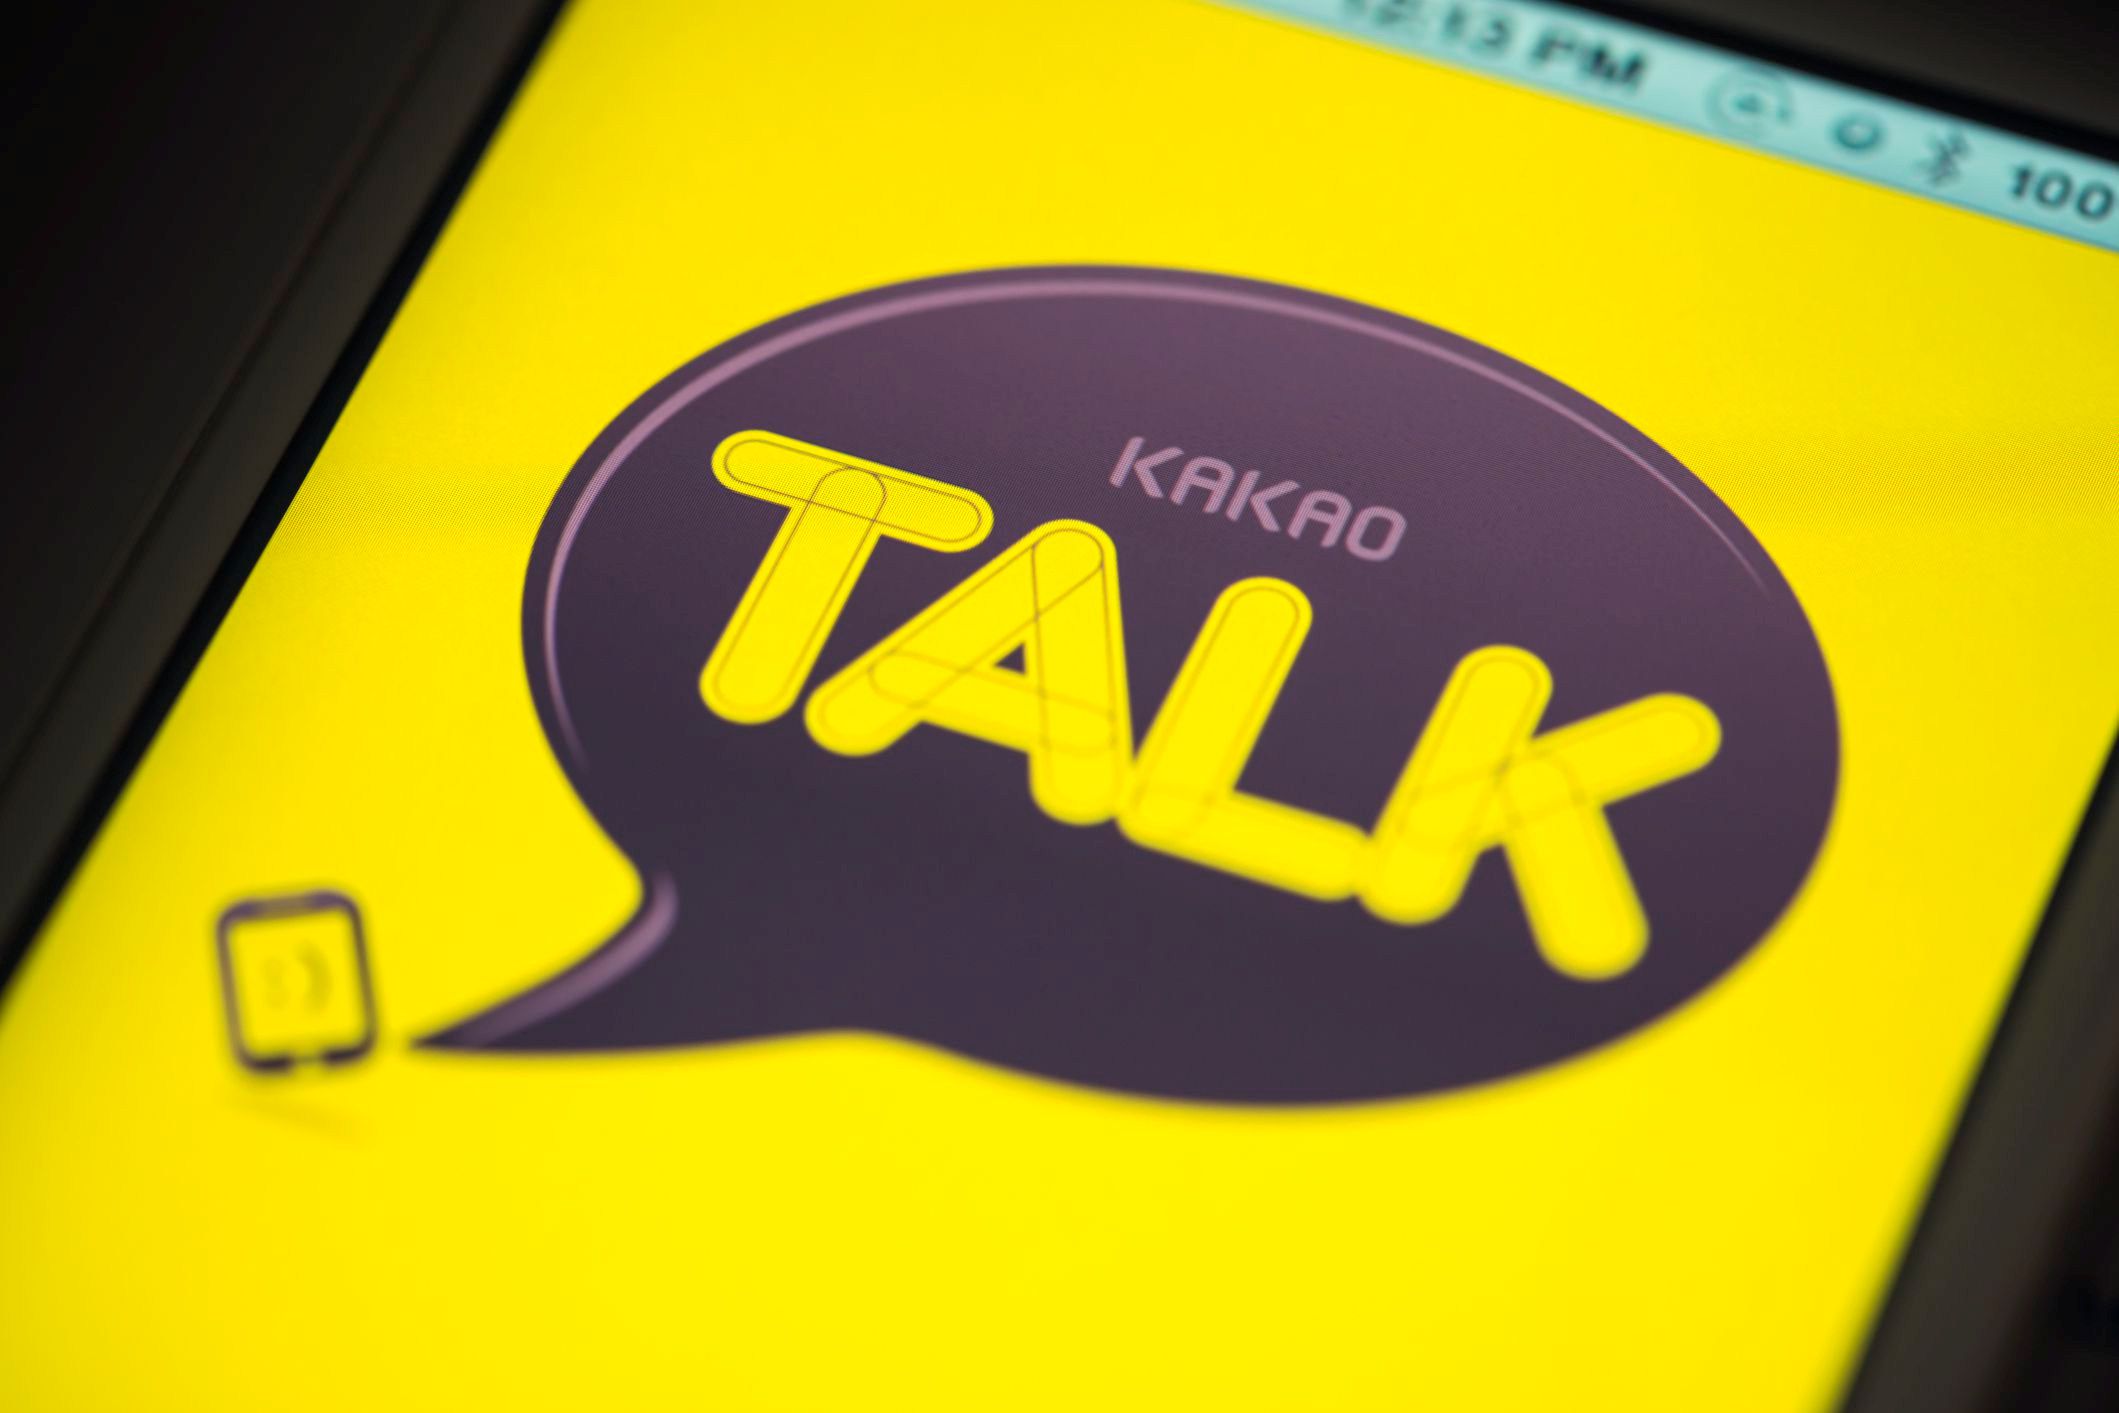 Kakao Talk App on Apple iPhone 4s Screen